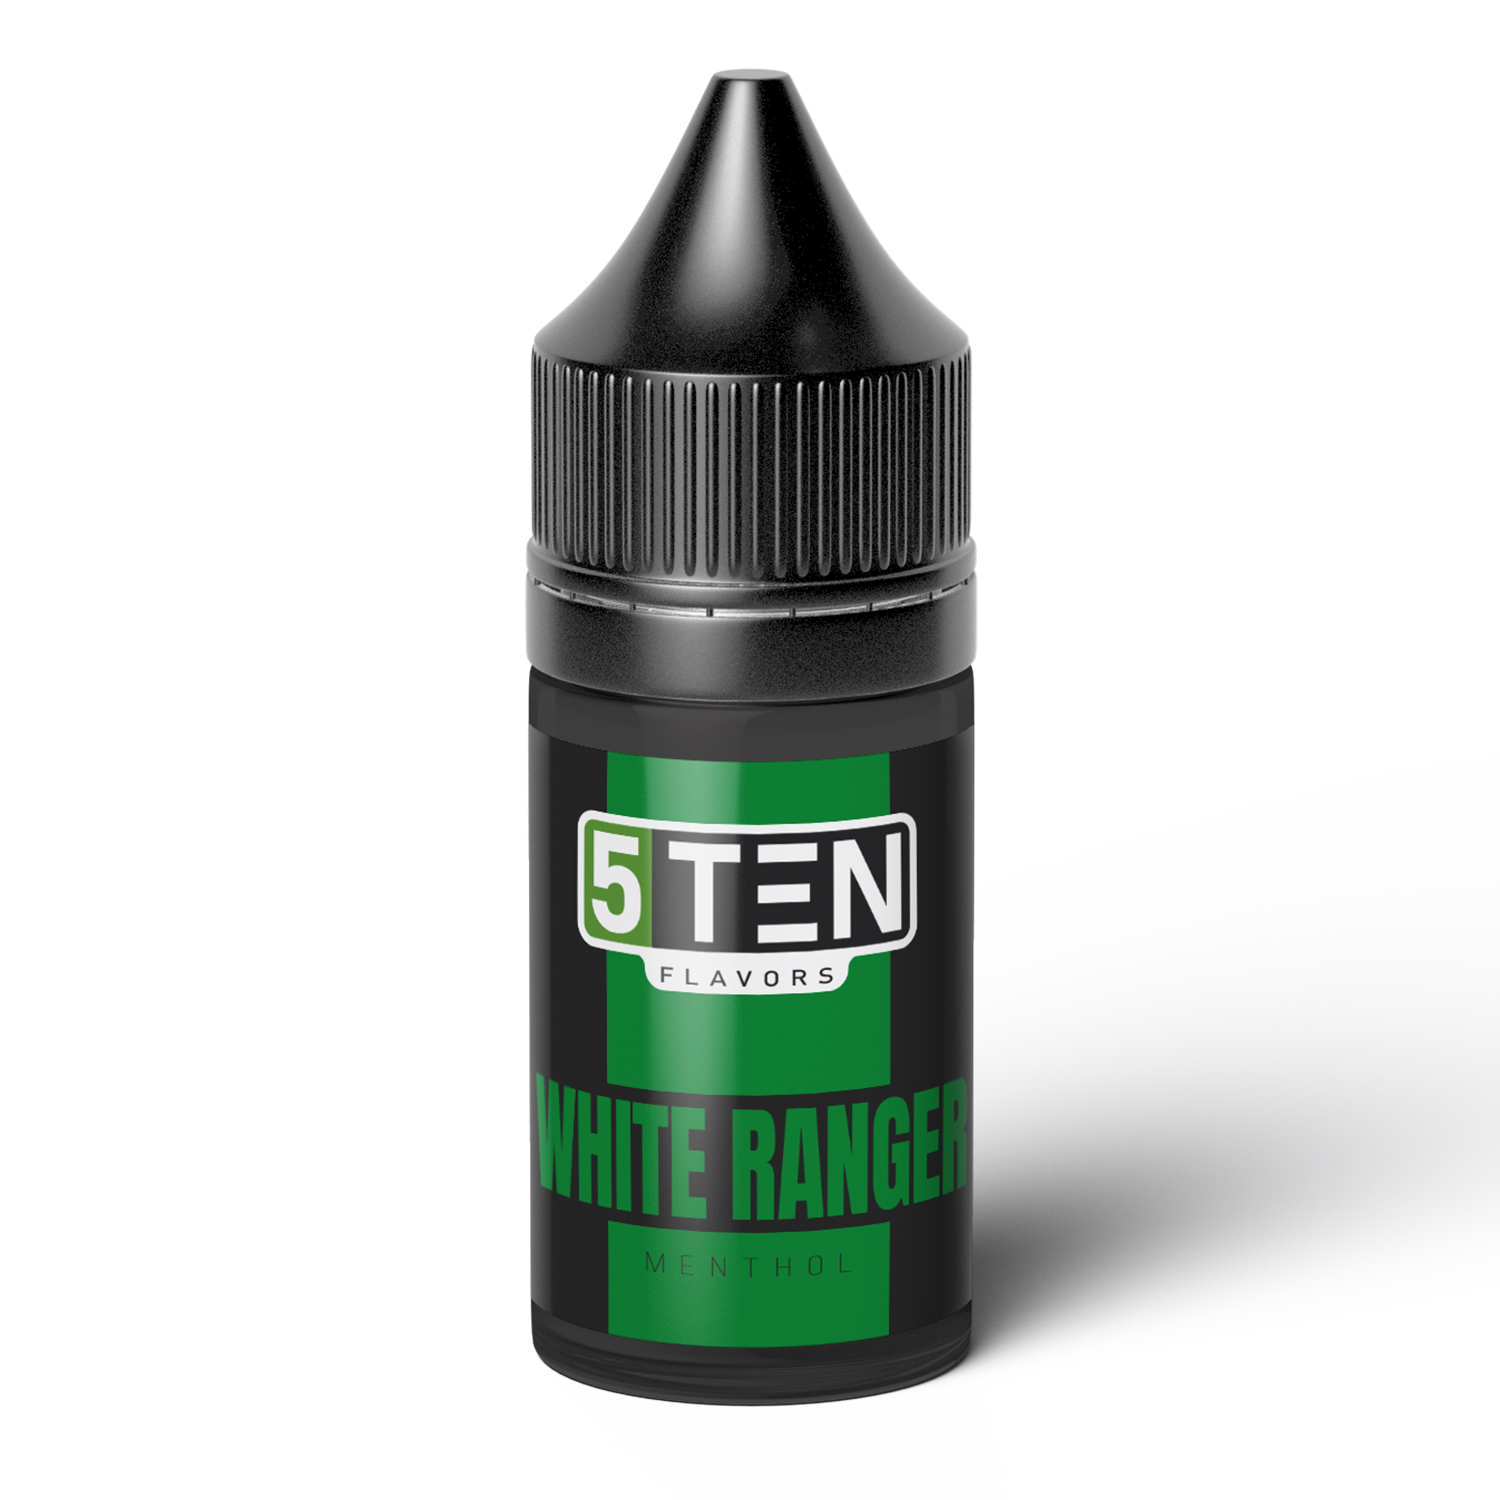 White Ranger - 5TEN Flavors - Longfill 2ml